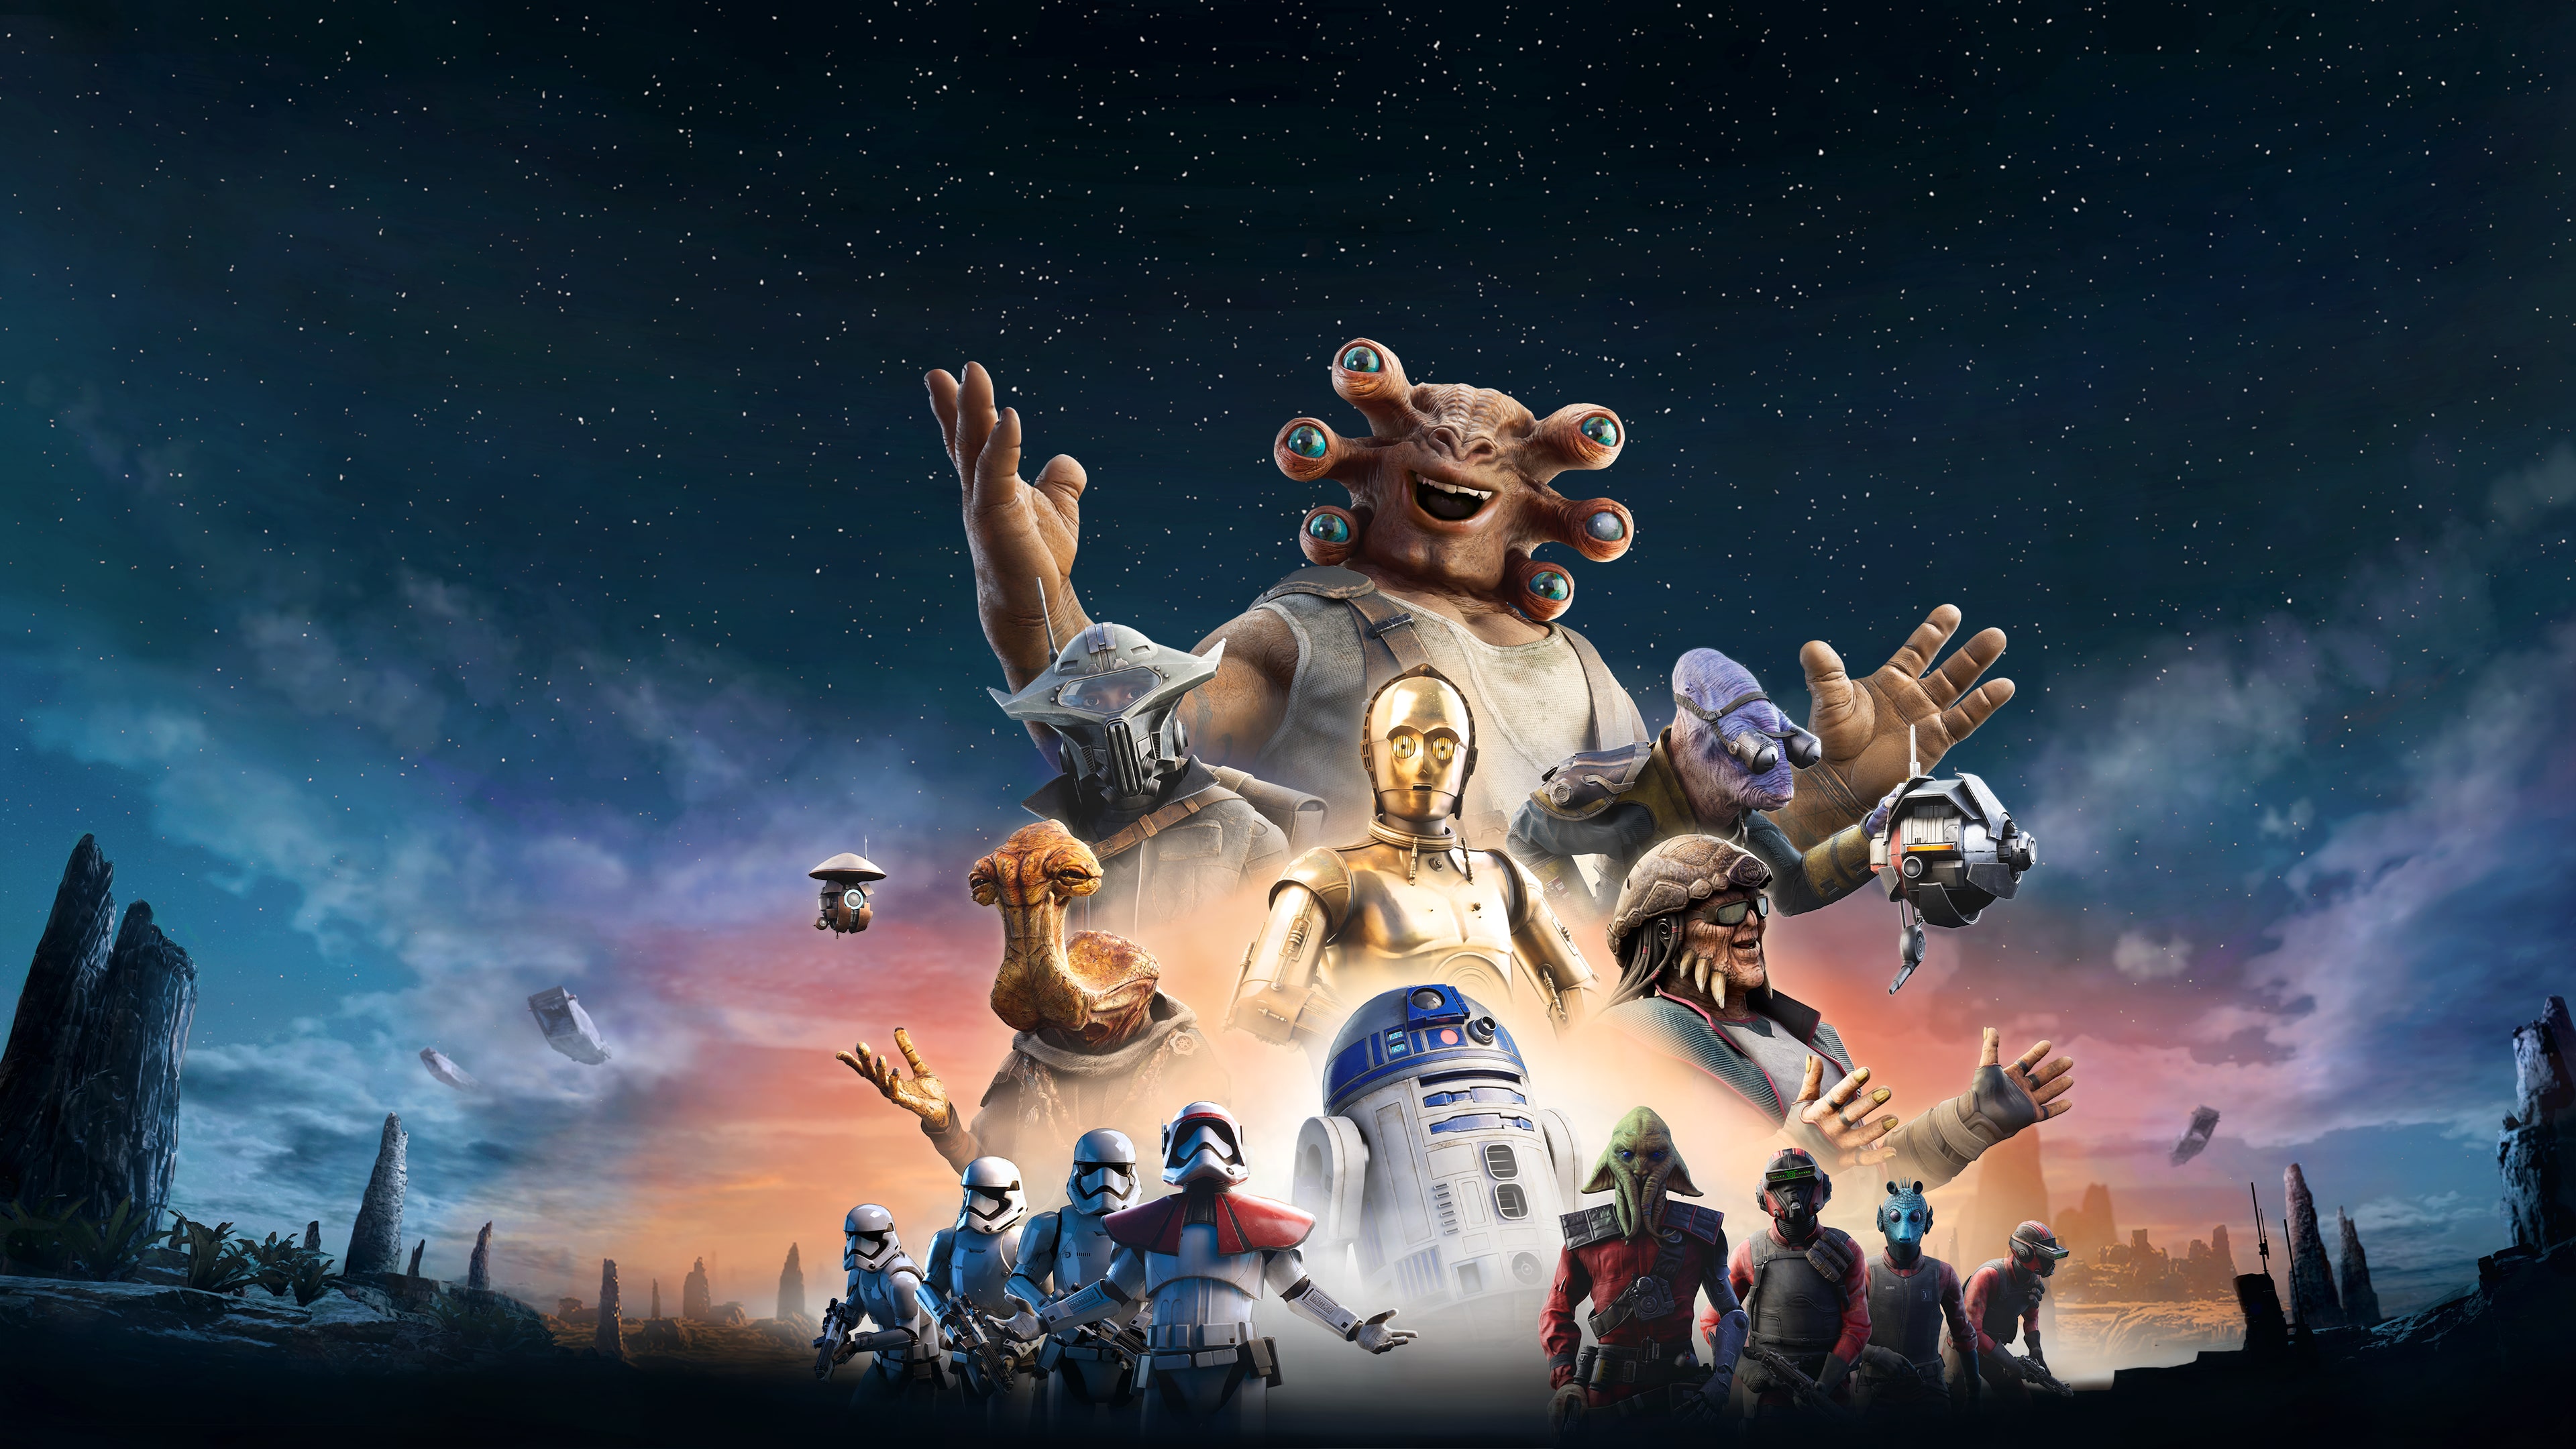 Star Wars: Contos dos Limites da Galáxia - Edição Aumentada